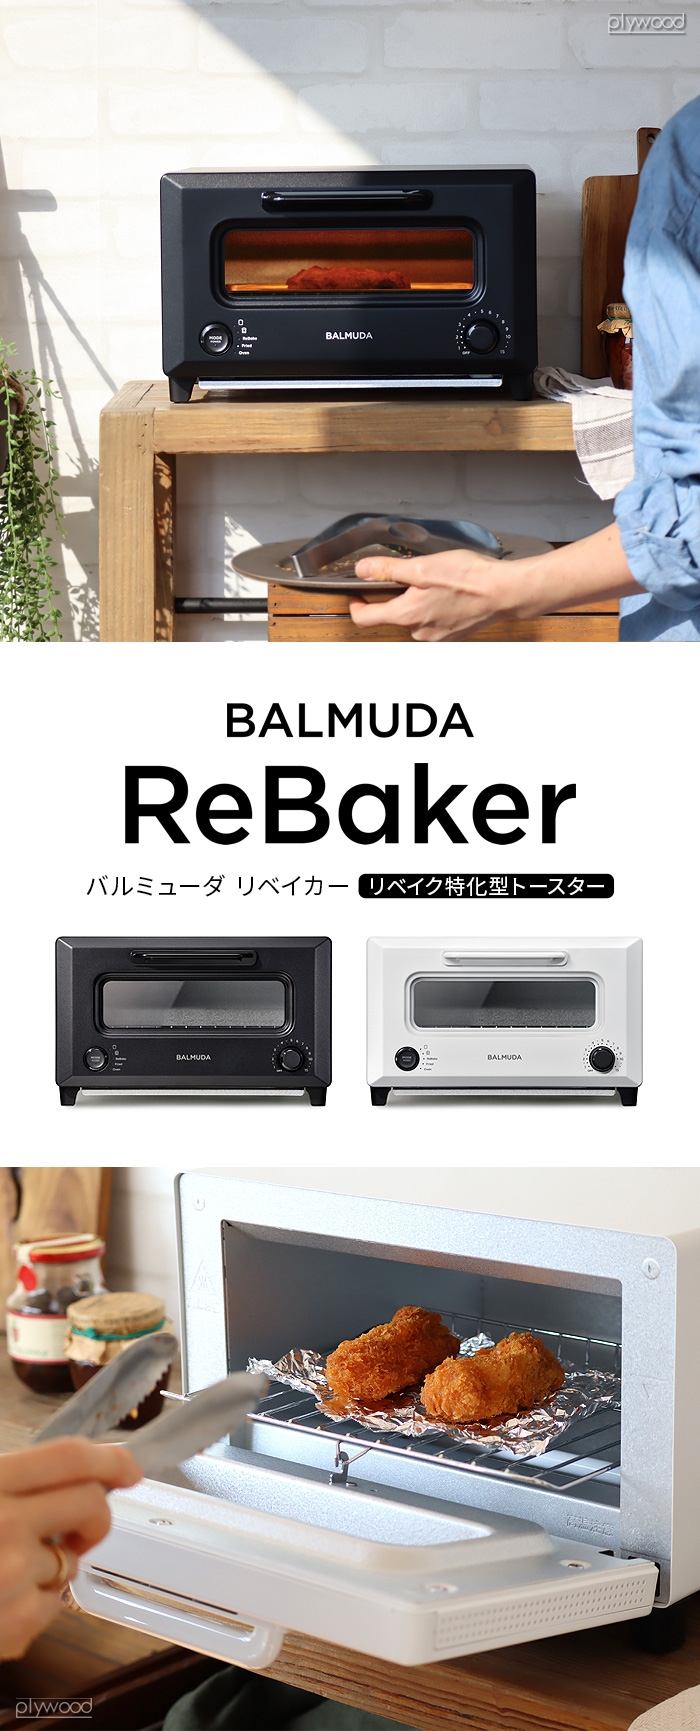 特典付 30日間全額返金保証 正規品 BALMUDA ReBaker KTT01JP バルミューダ リベーカー トースター リベイク  オーブントースター おしゃれ トースト 揚げ物 温め